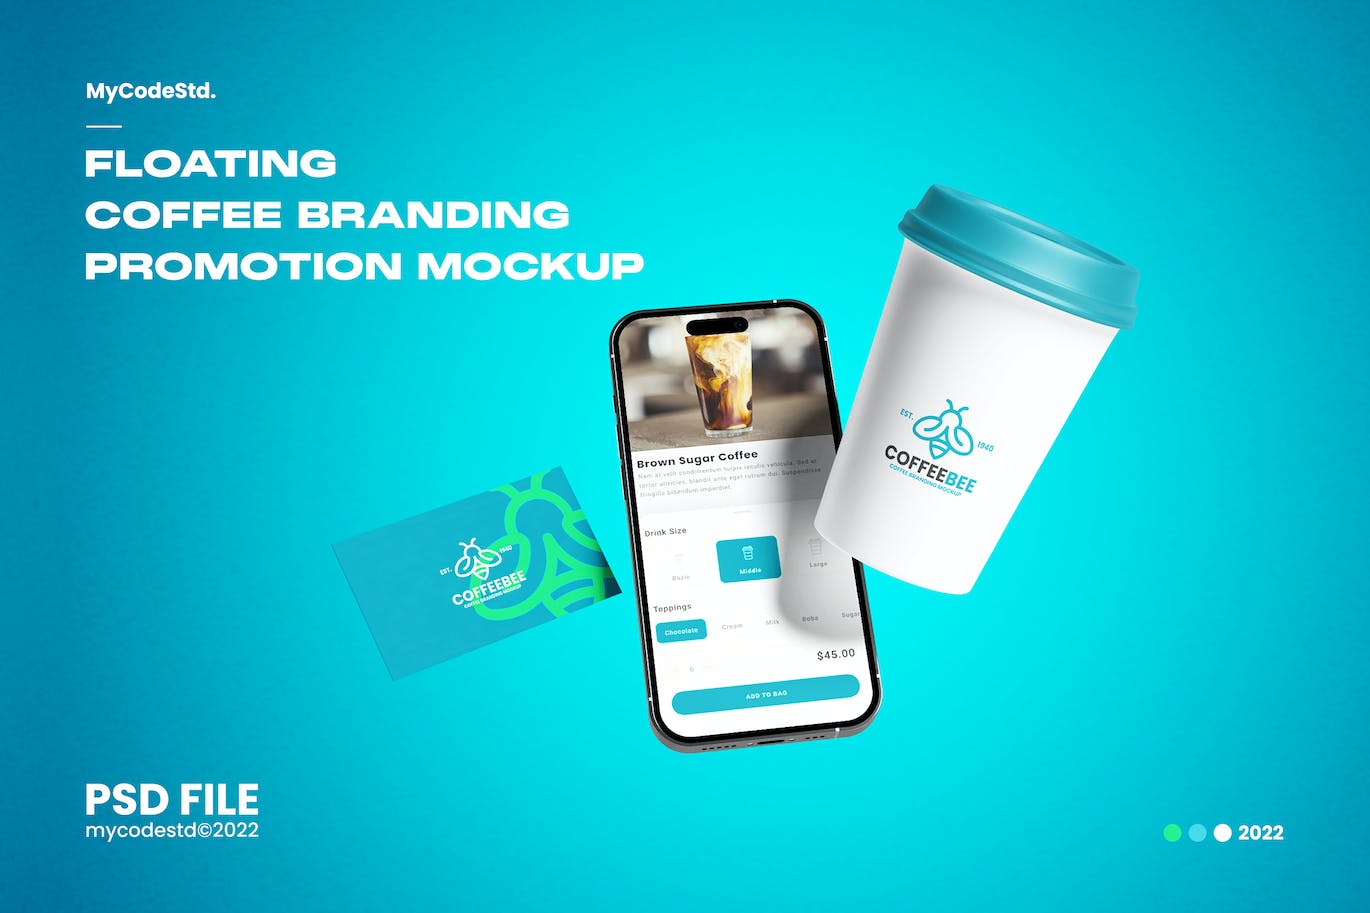 浮动手机/名片/纸杯咖啡品牌推广样机 Floating Coffee Branding Promotion Mockup 样机素材 第1张